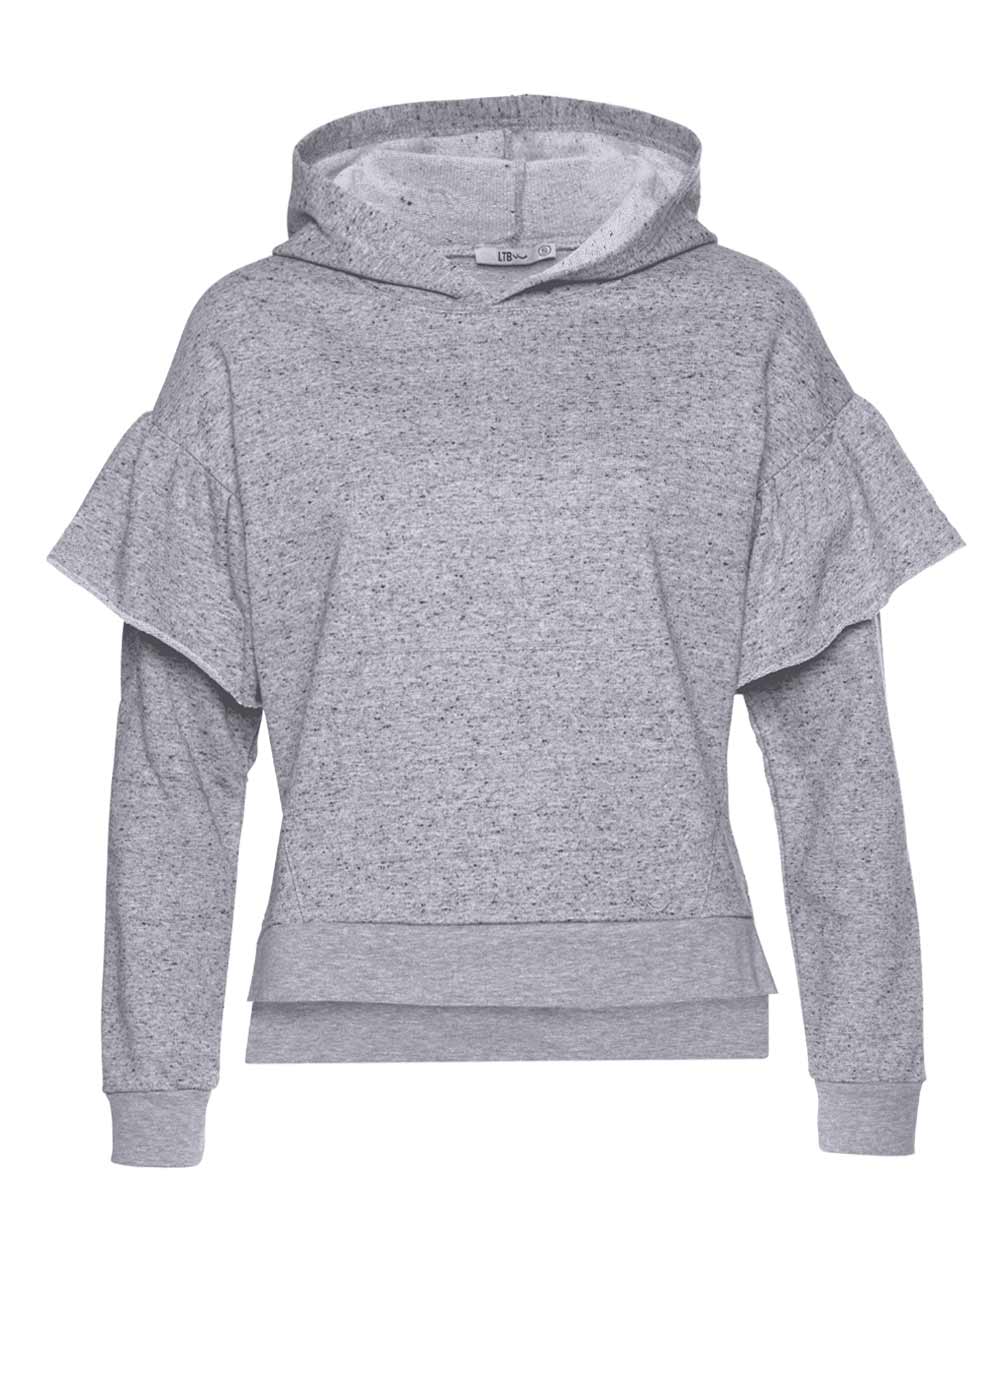 LTB Damen Marken-Sweatshirt »Fejabo«, grau-melange